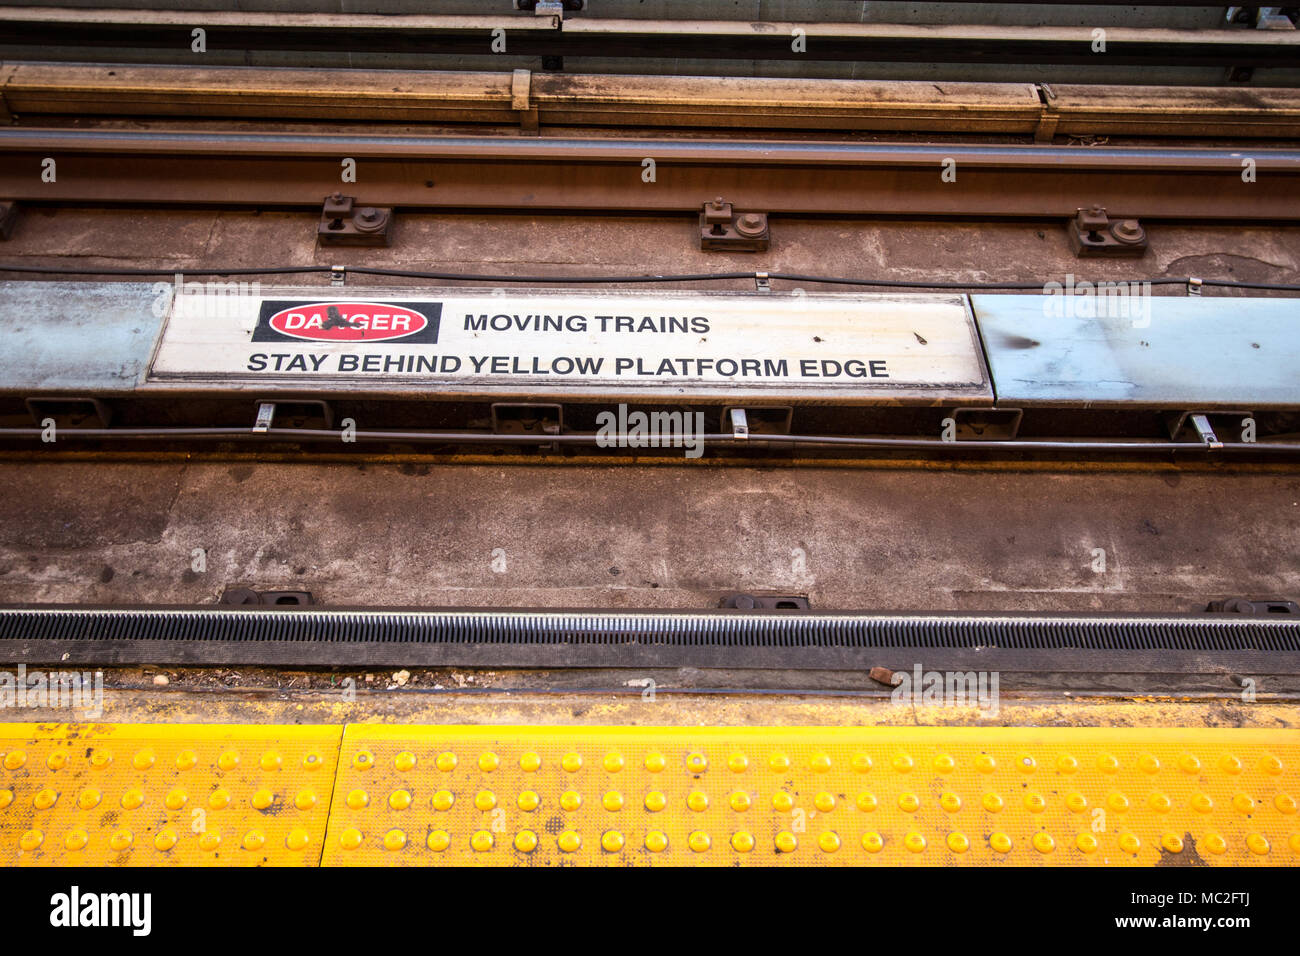 La metropolitana via avvertimento. Simbolo e il messaggio di avviso di pendolari a rimanere lontano dal bordo della piattaforma. Foto Stock